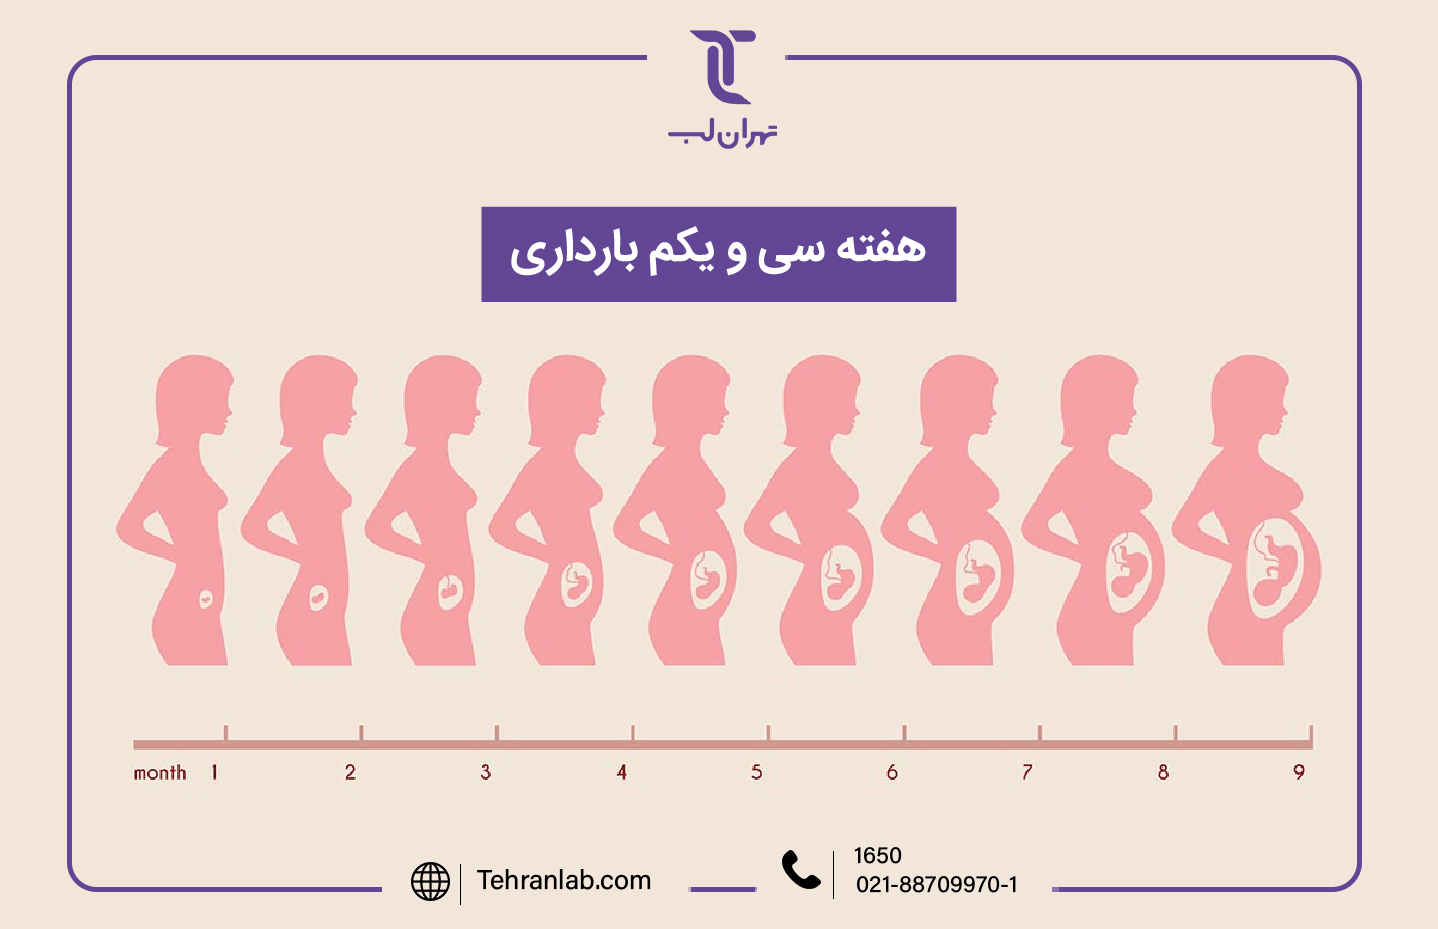 همه چیز درباره هفته سی و یکم (31) بارداری | آزمایشگاه تهران لب